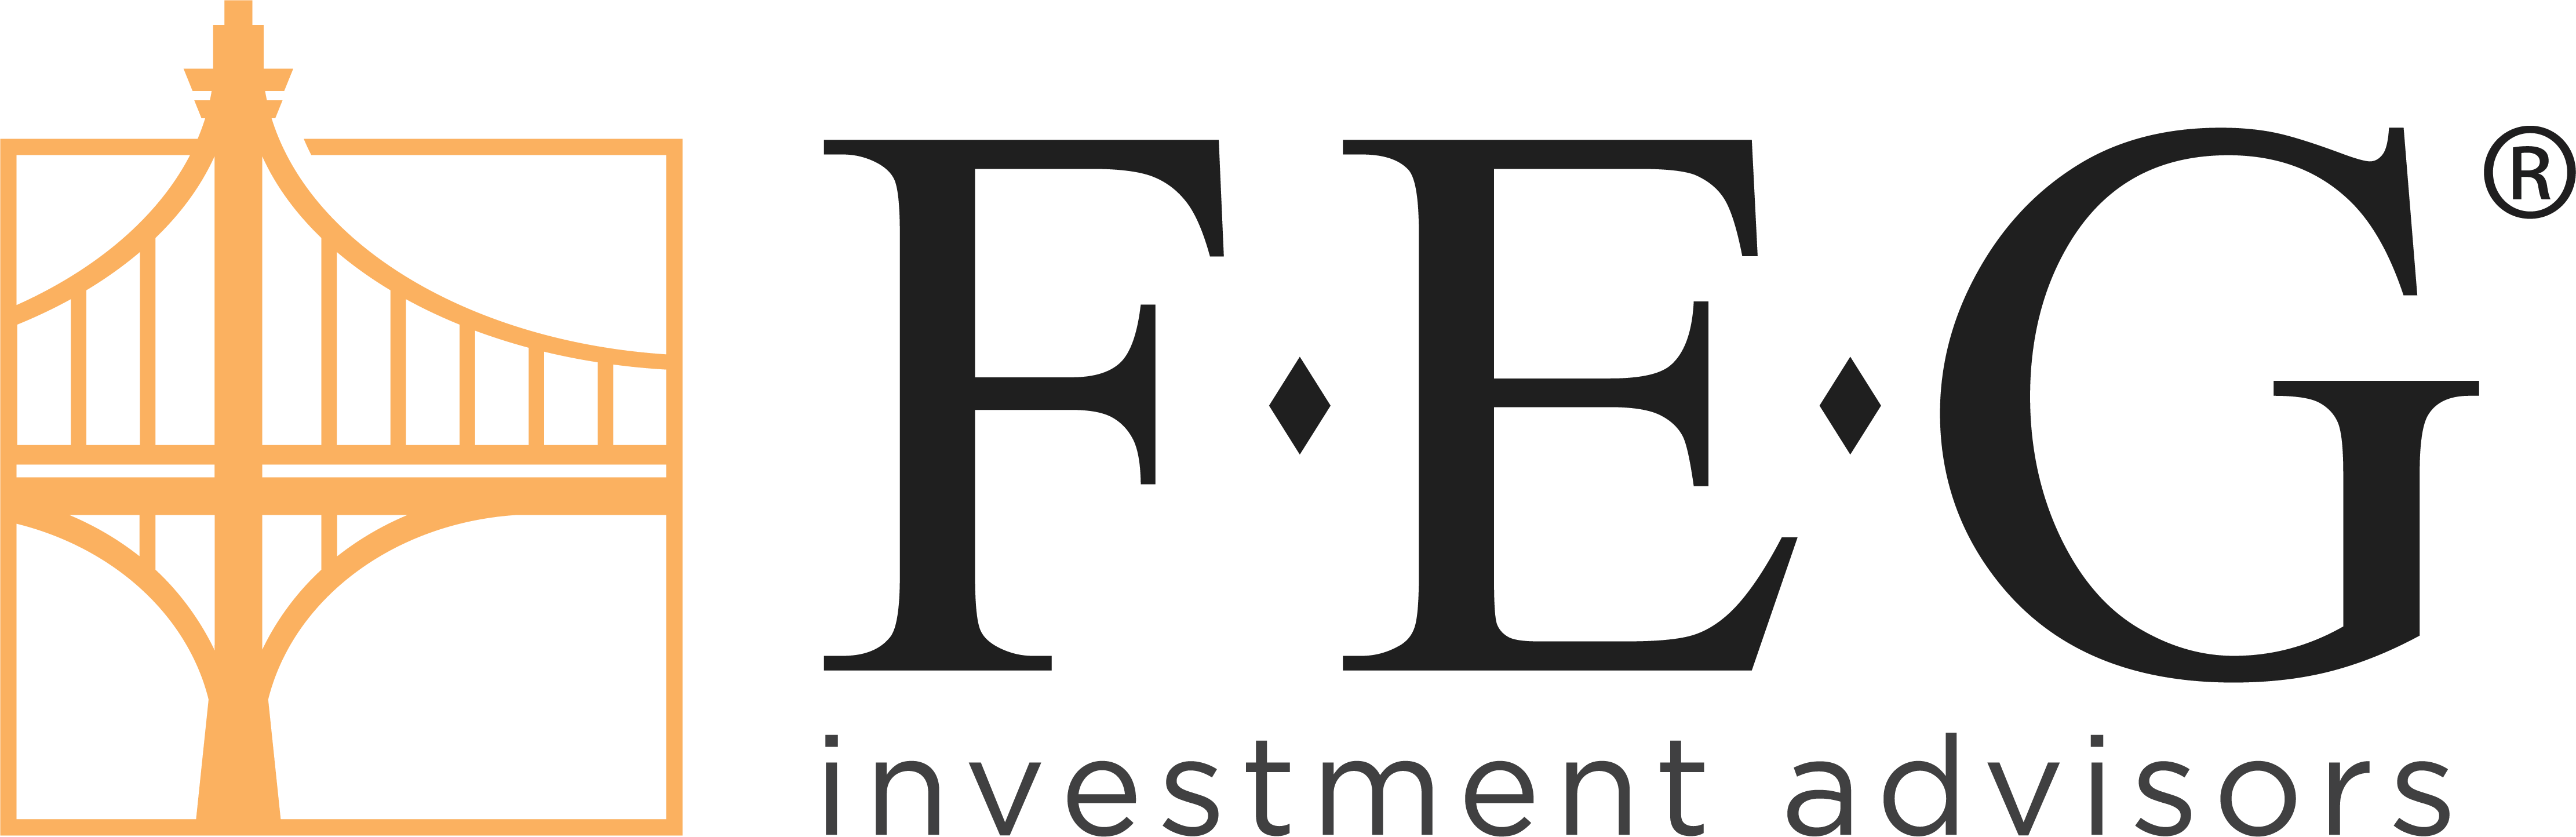 FEG Investment Advisors